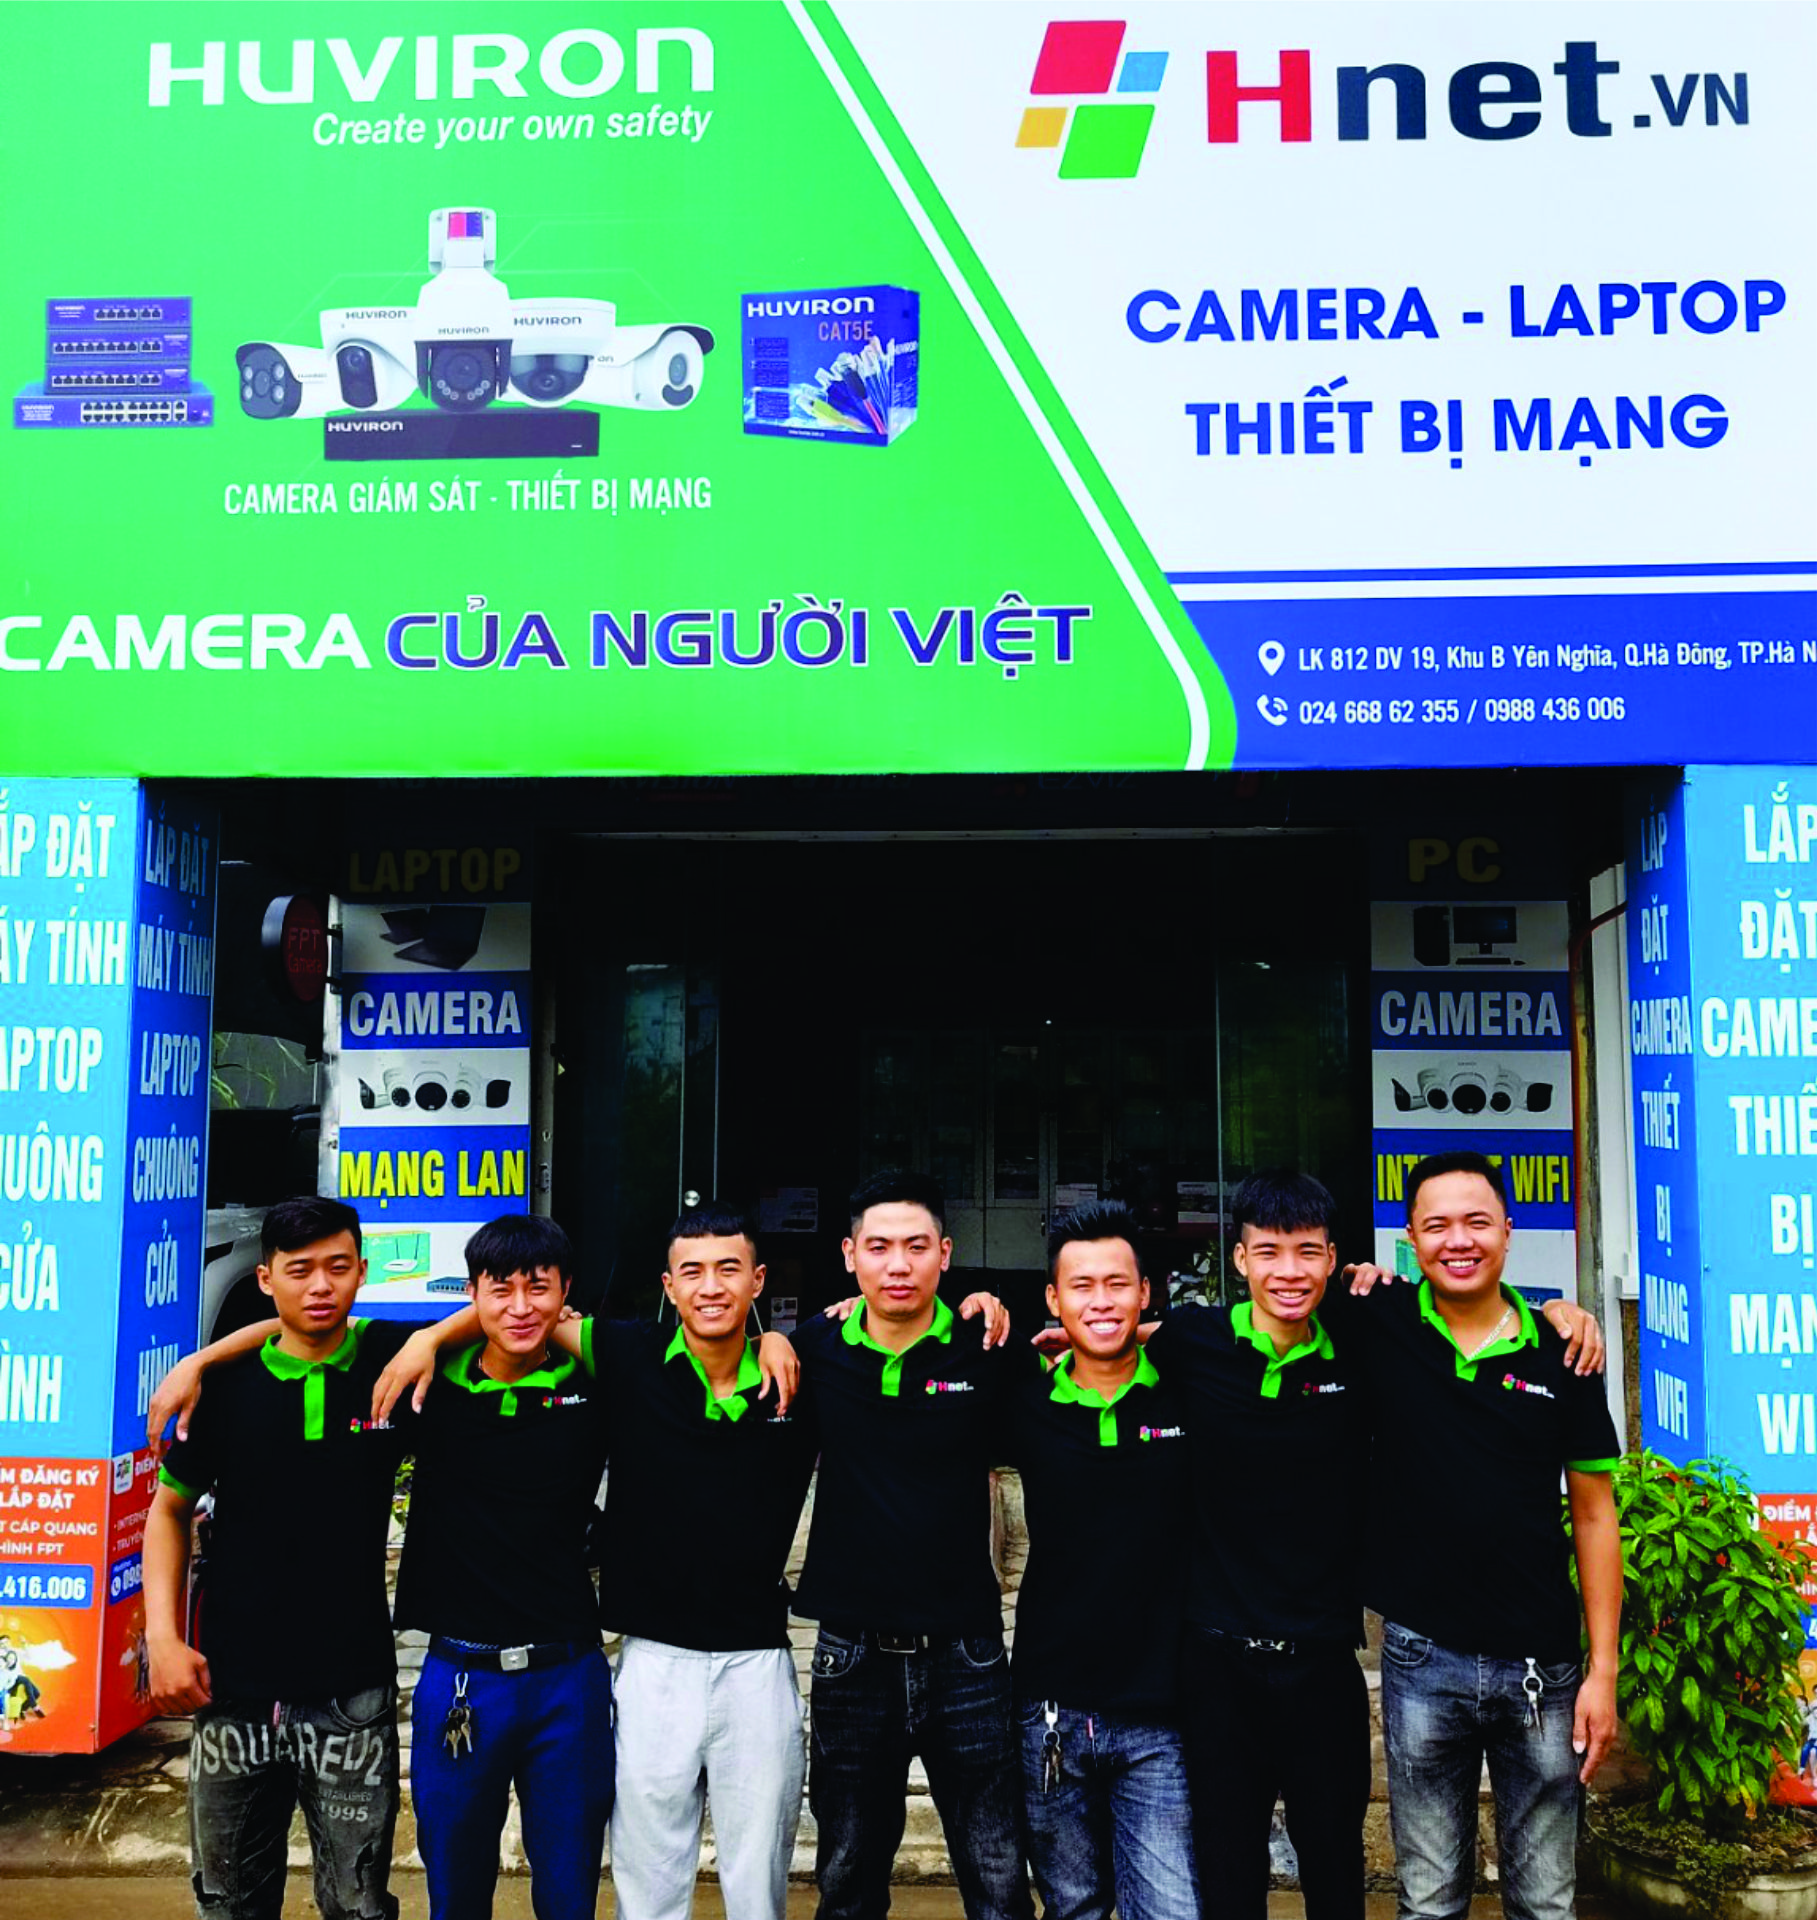 Đội ngũ nhân viên kỹ thuật Hnet